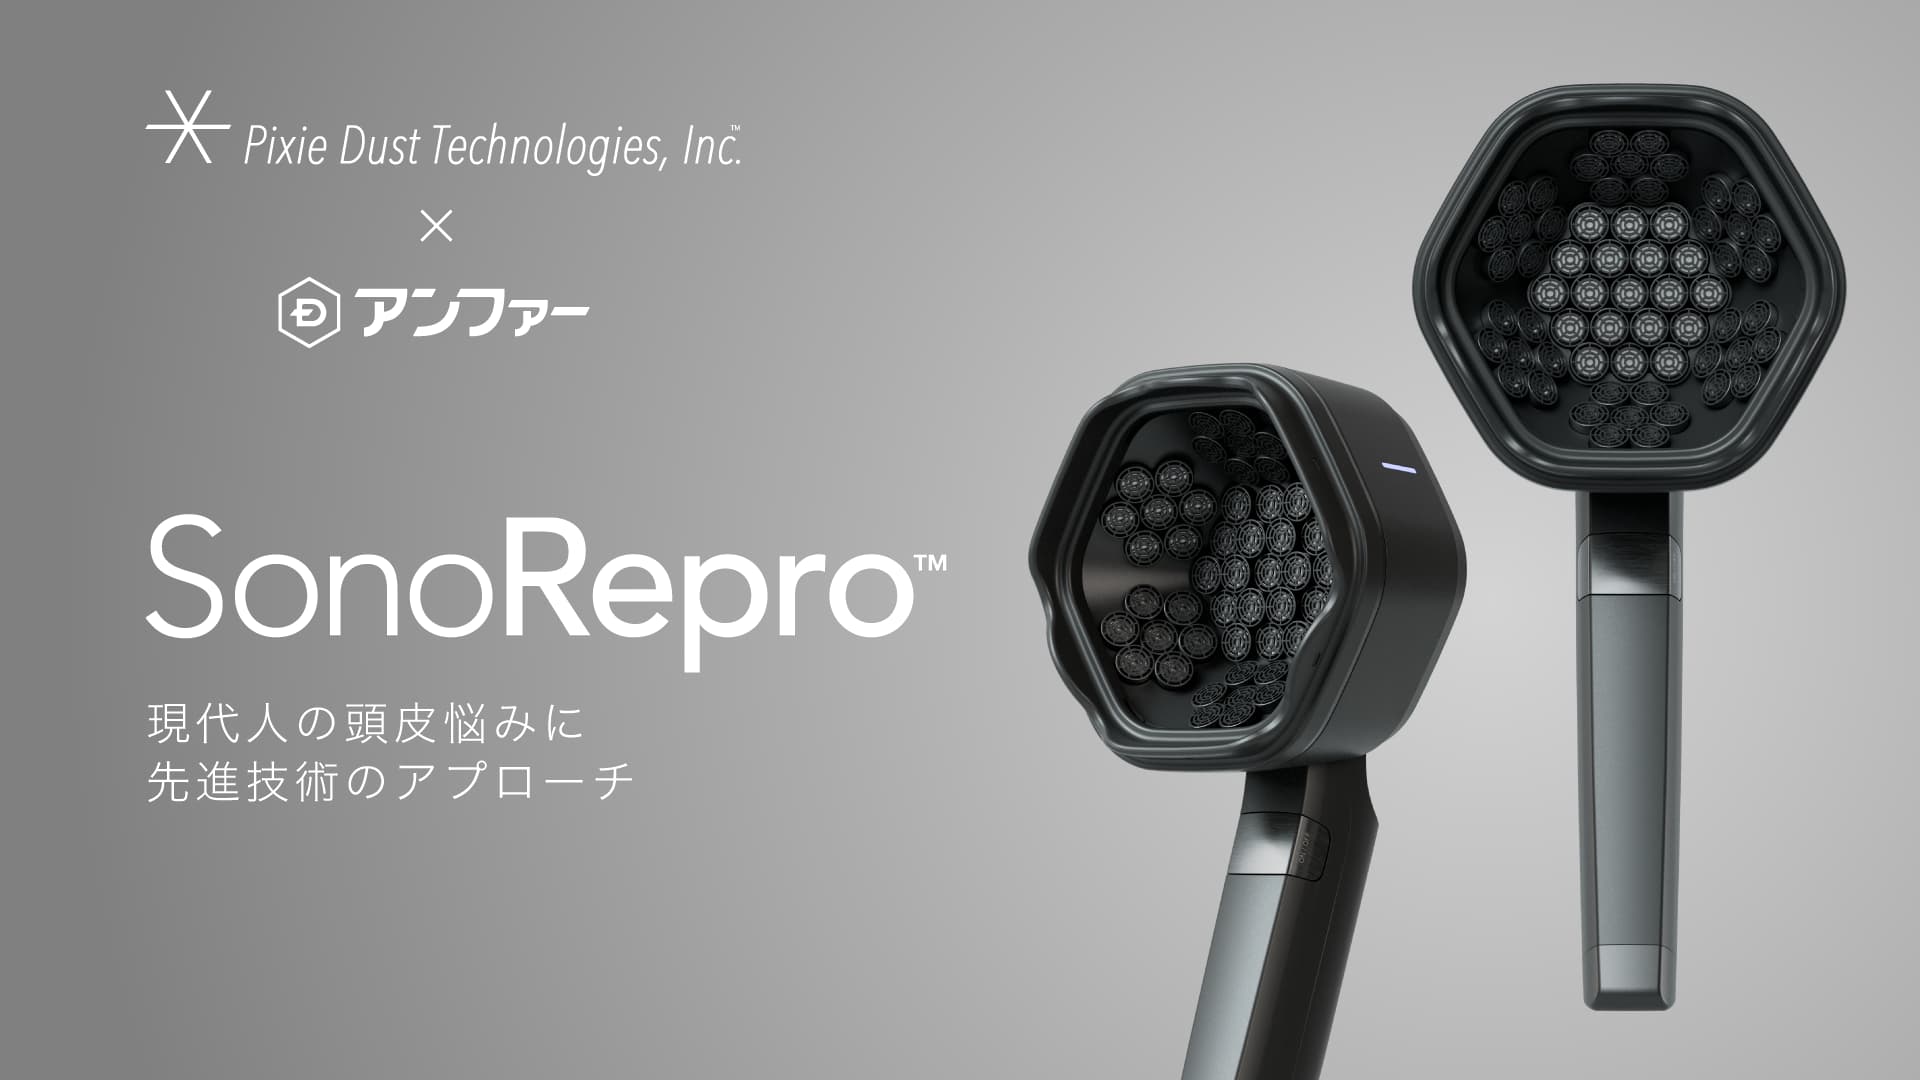 落合陽一率いるピクシーダストテクノロジーズ、先端技術の超音波ヘアケアデバイス「SonoRepro」をアンファーと開発、販売開始